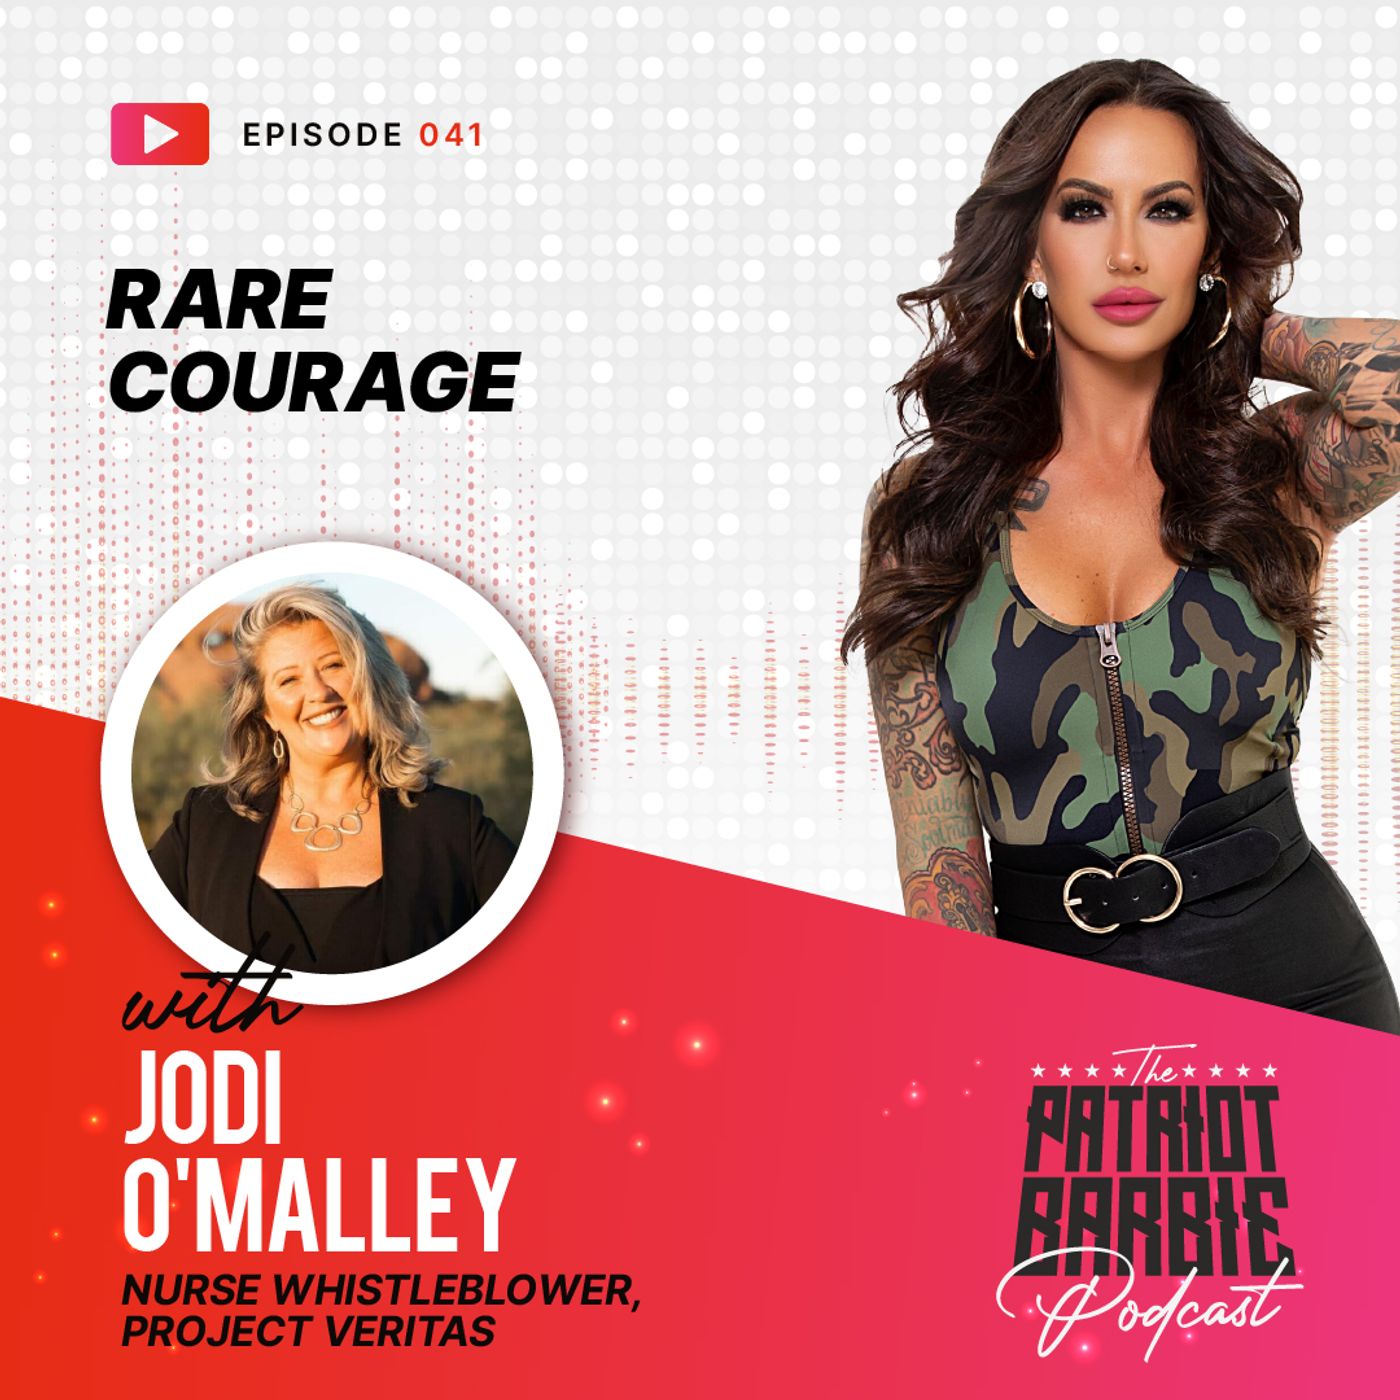 A Rare Courage | Jodi O’Malley x Patriot Barbie